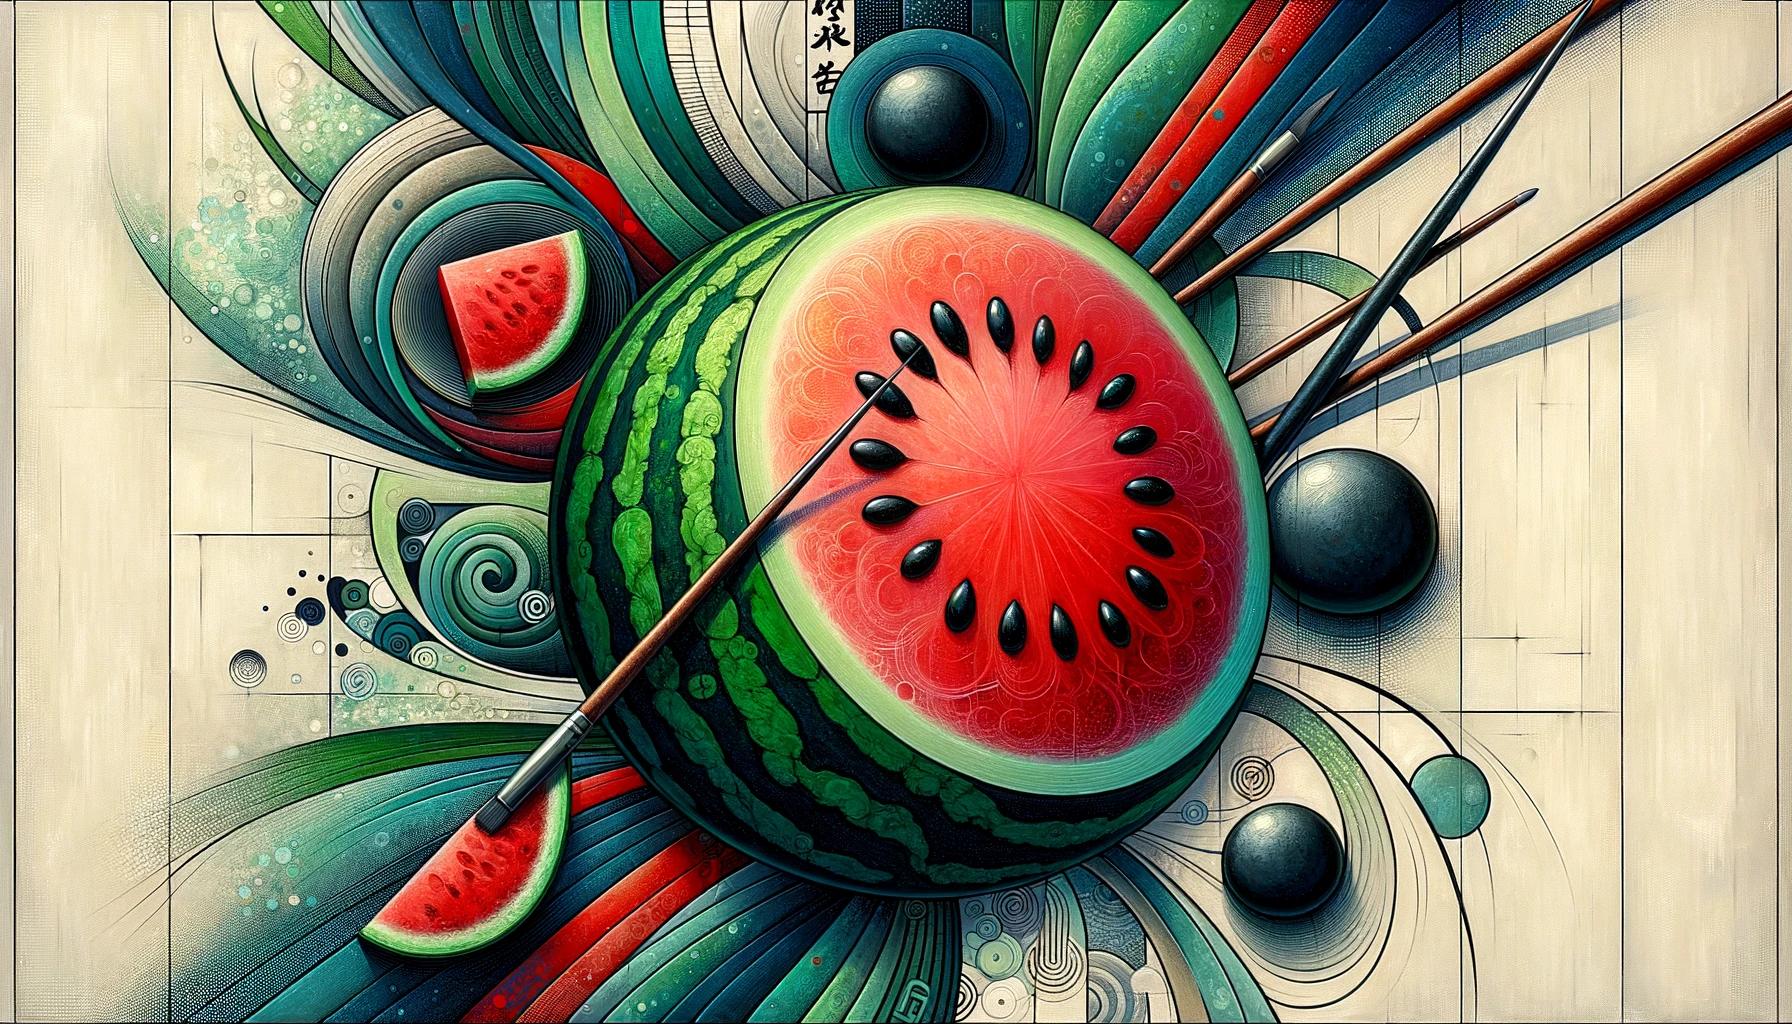 "Watermelon" ha nihongo de suika to iimasu.